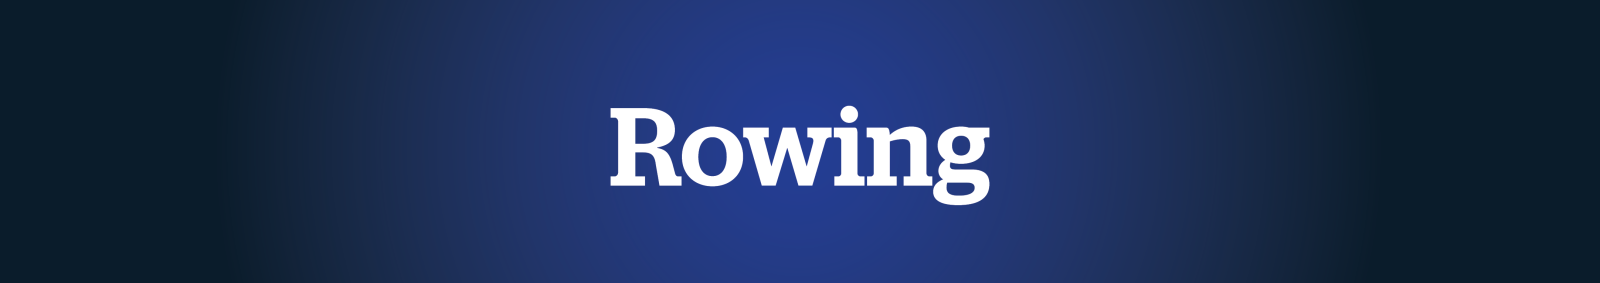 Men's Rowing